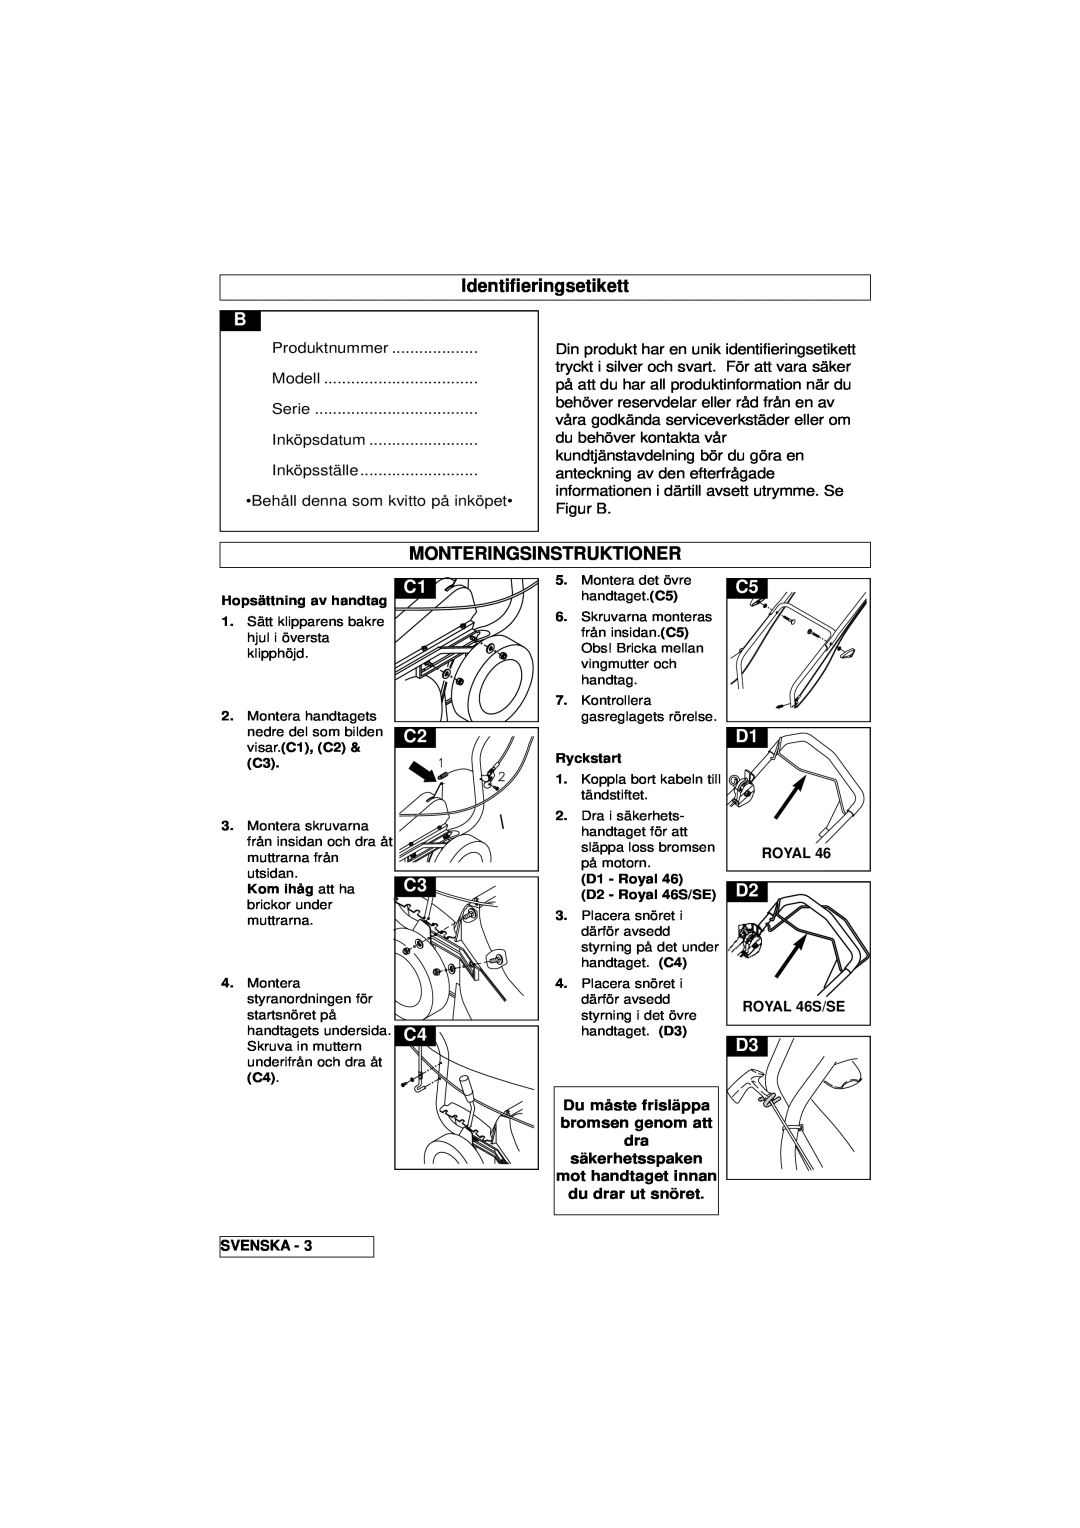 Husqvarna 46SE manual Identifieringsetikett, Monteringsinstruktioner, Royal, ROYAL 46S/SE, Svenska 